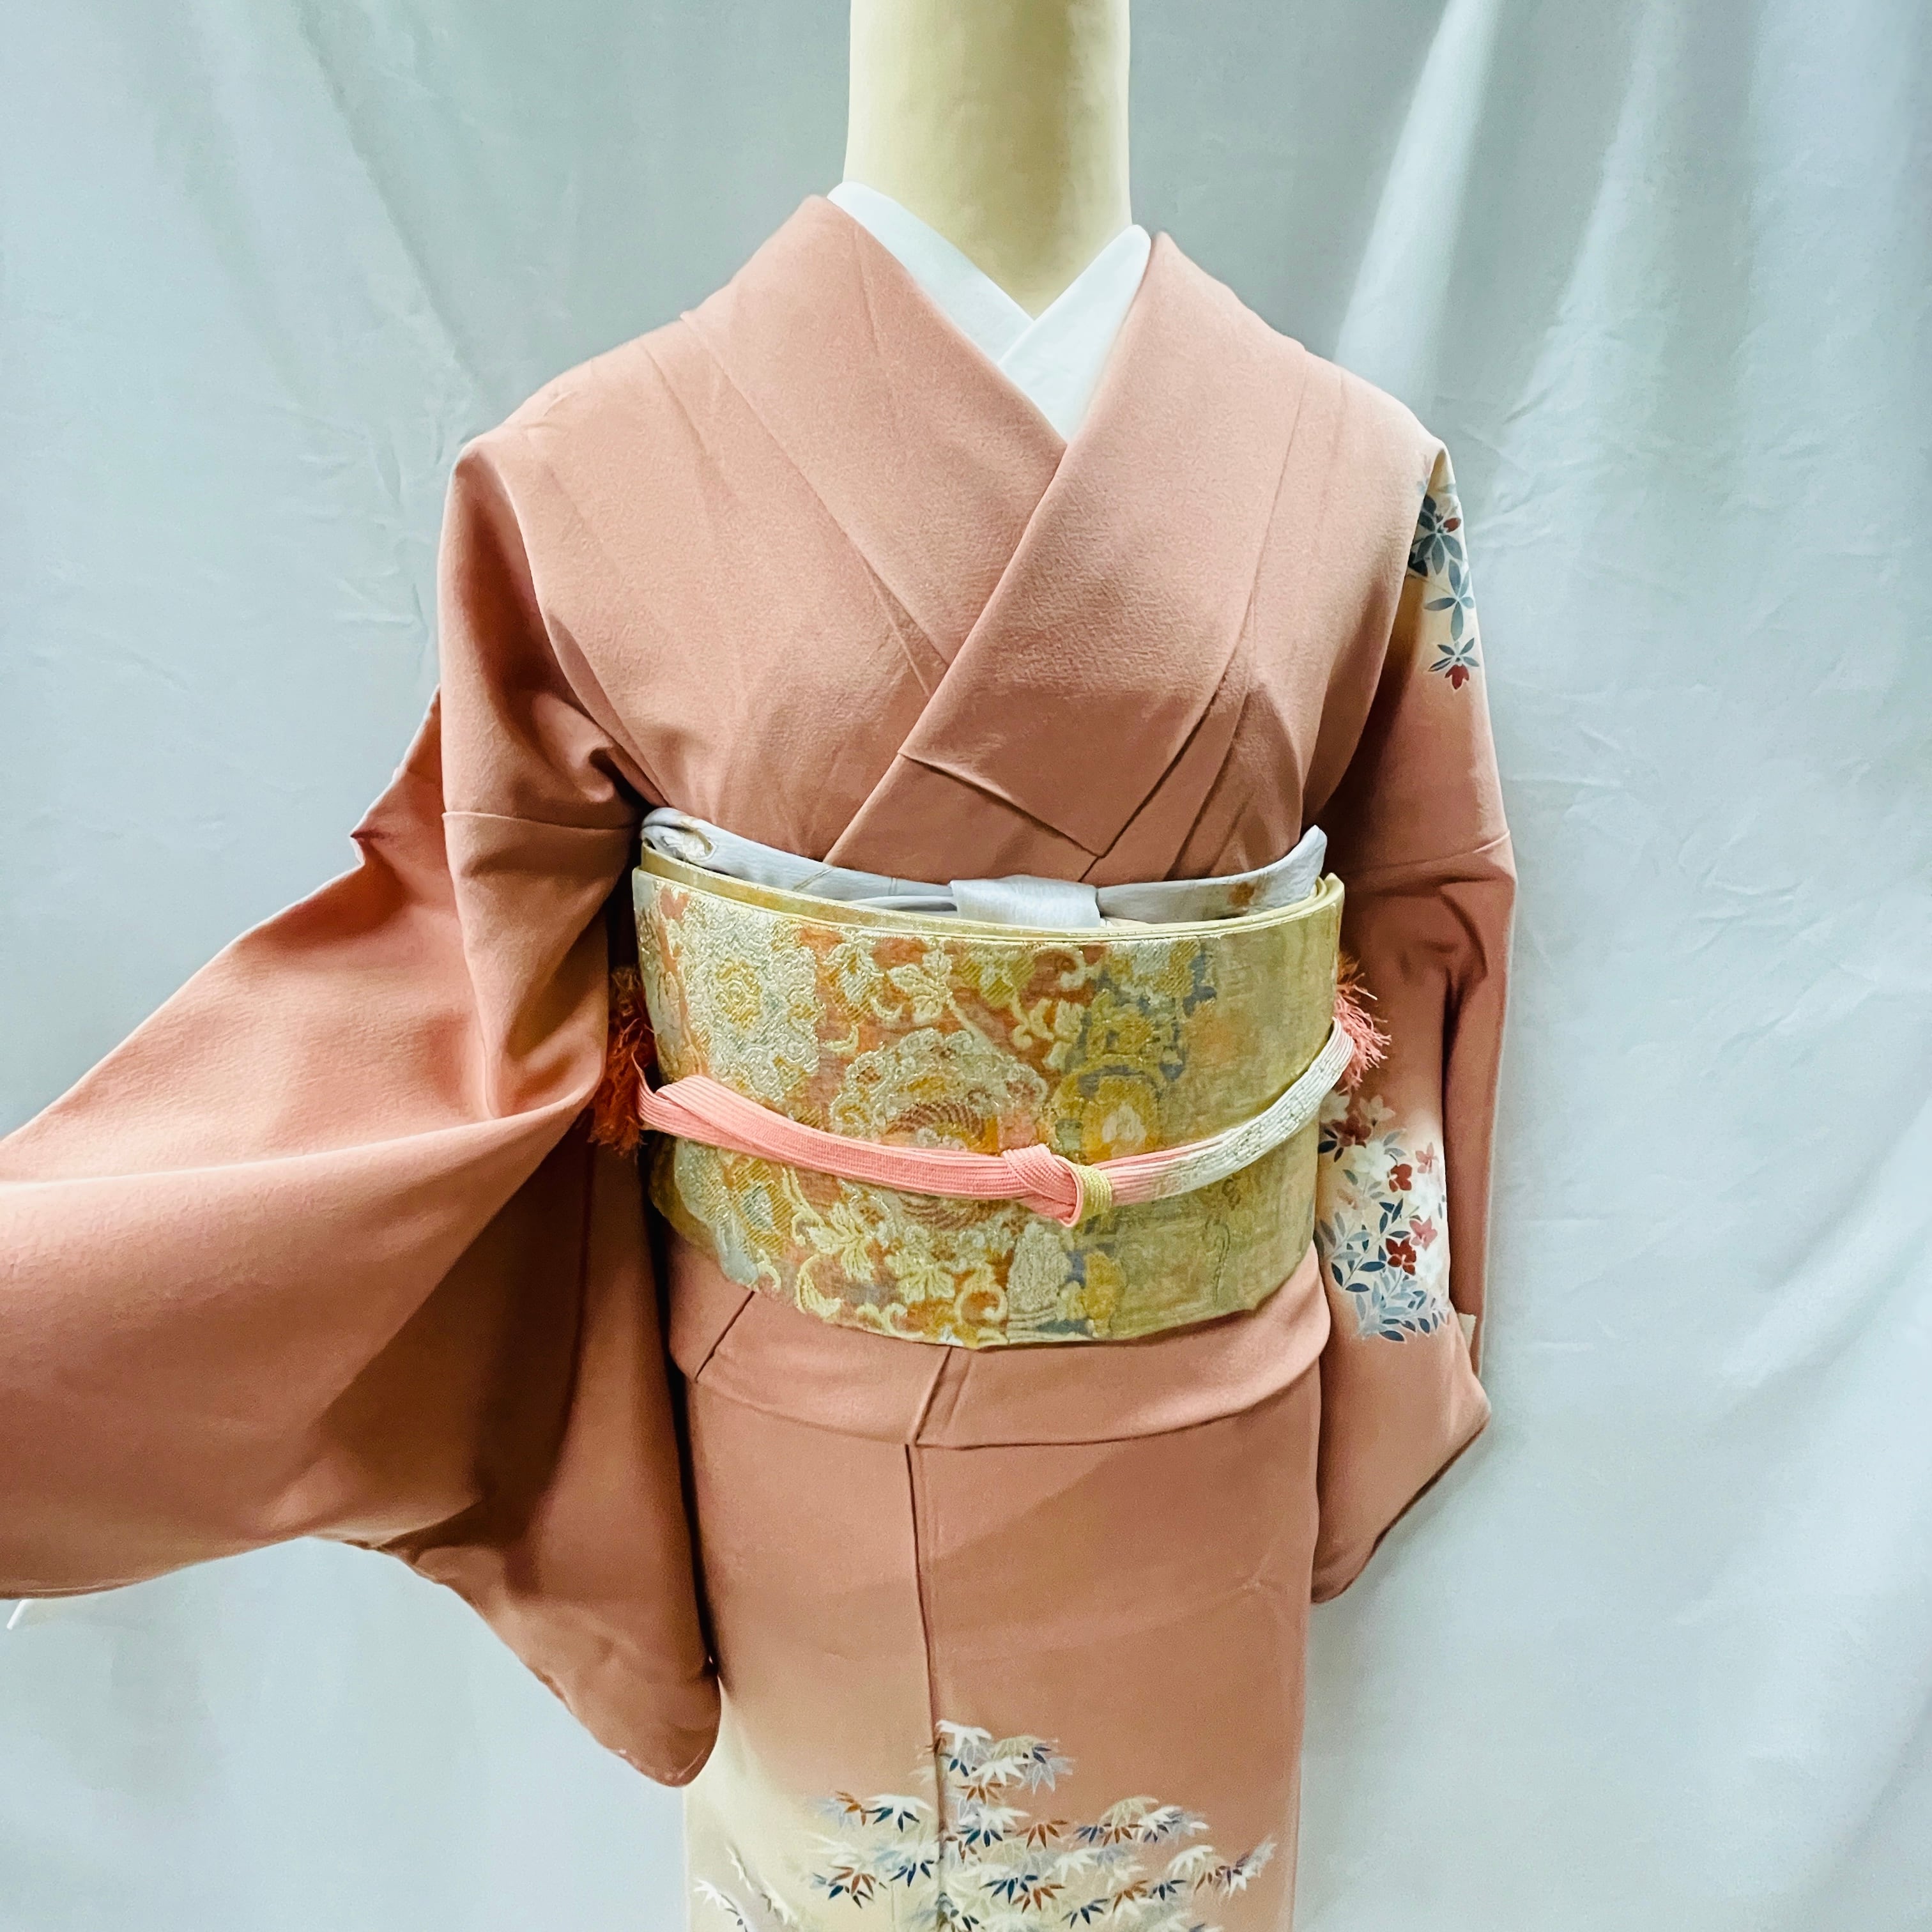 着物 | アンティーク着物 侘びすけ wabisuke モダン おしゃれな着物 